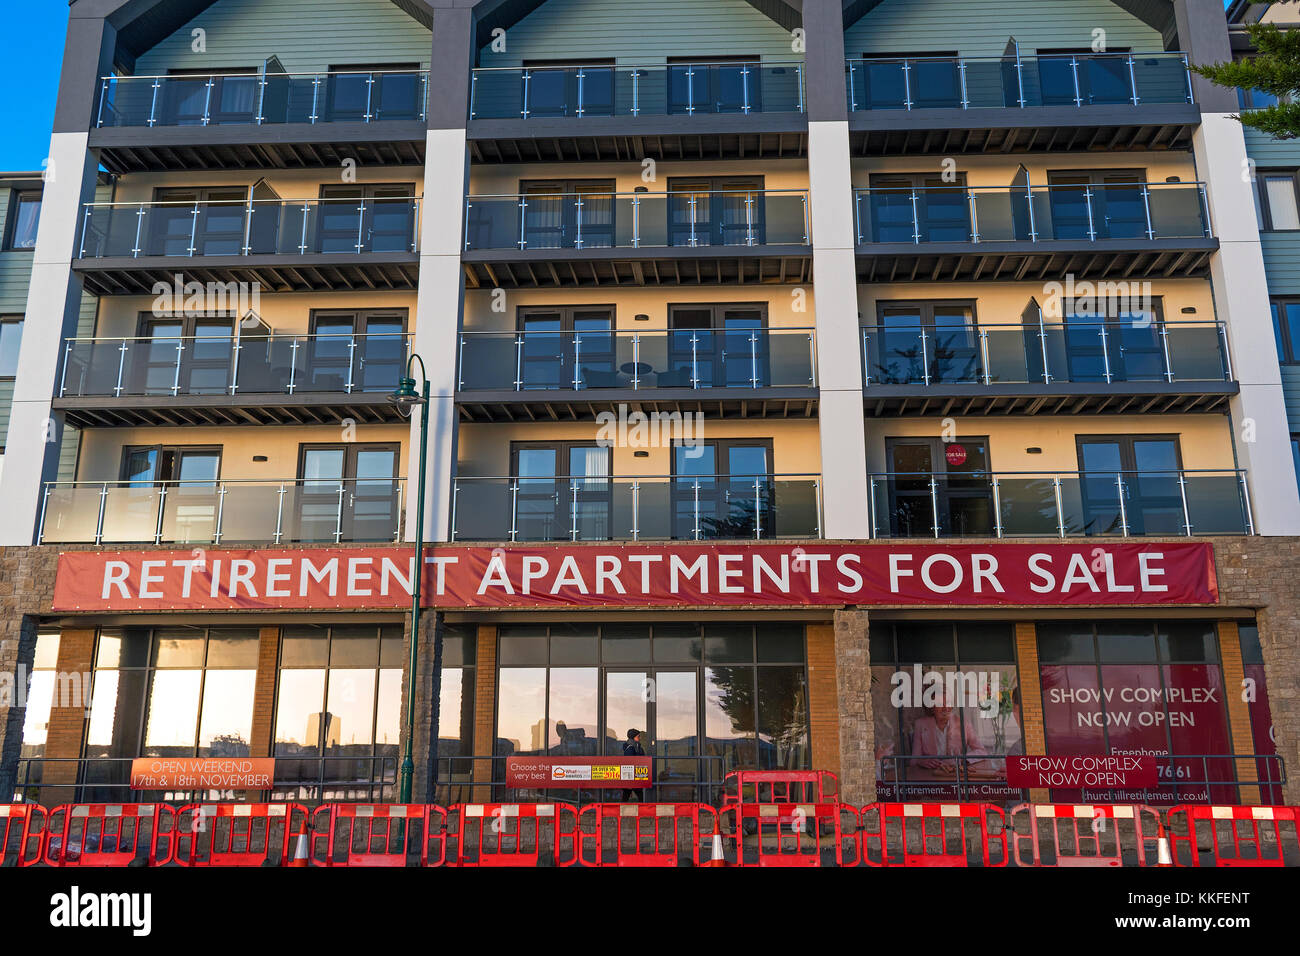 Appartements à vendre à la retraite dans la ville côtière de Penzance, Cornwall, England, UK. Banque D'Images